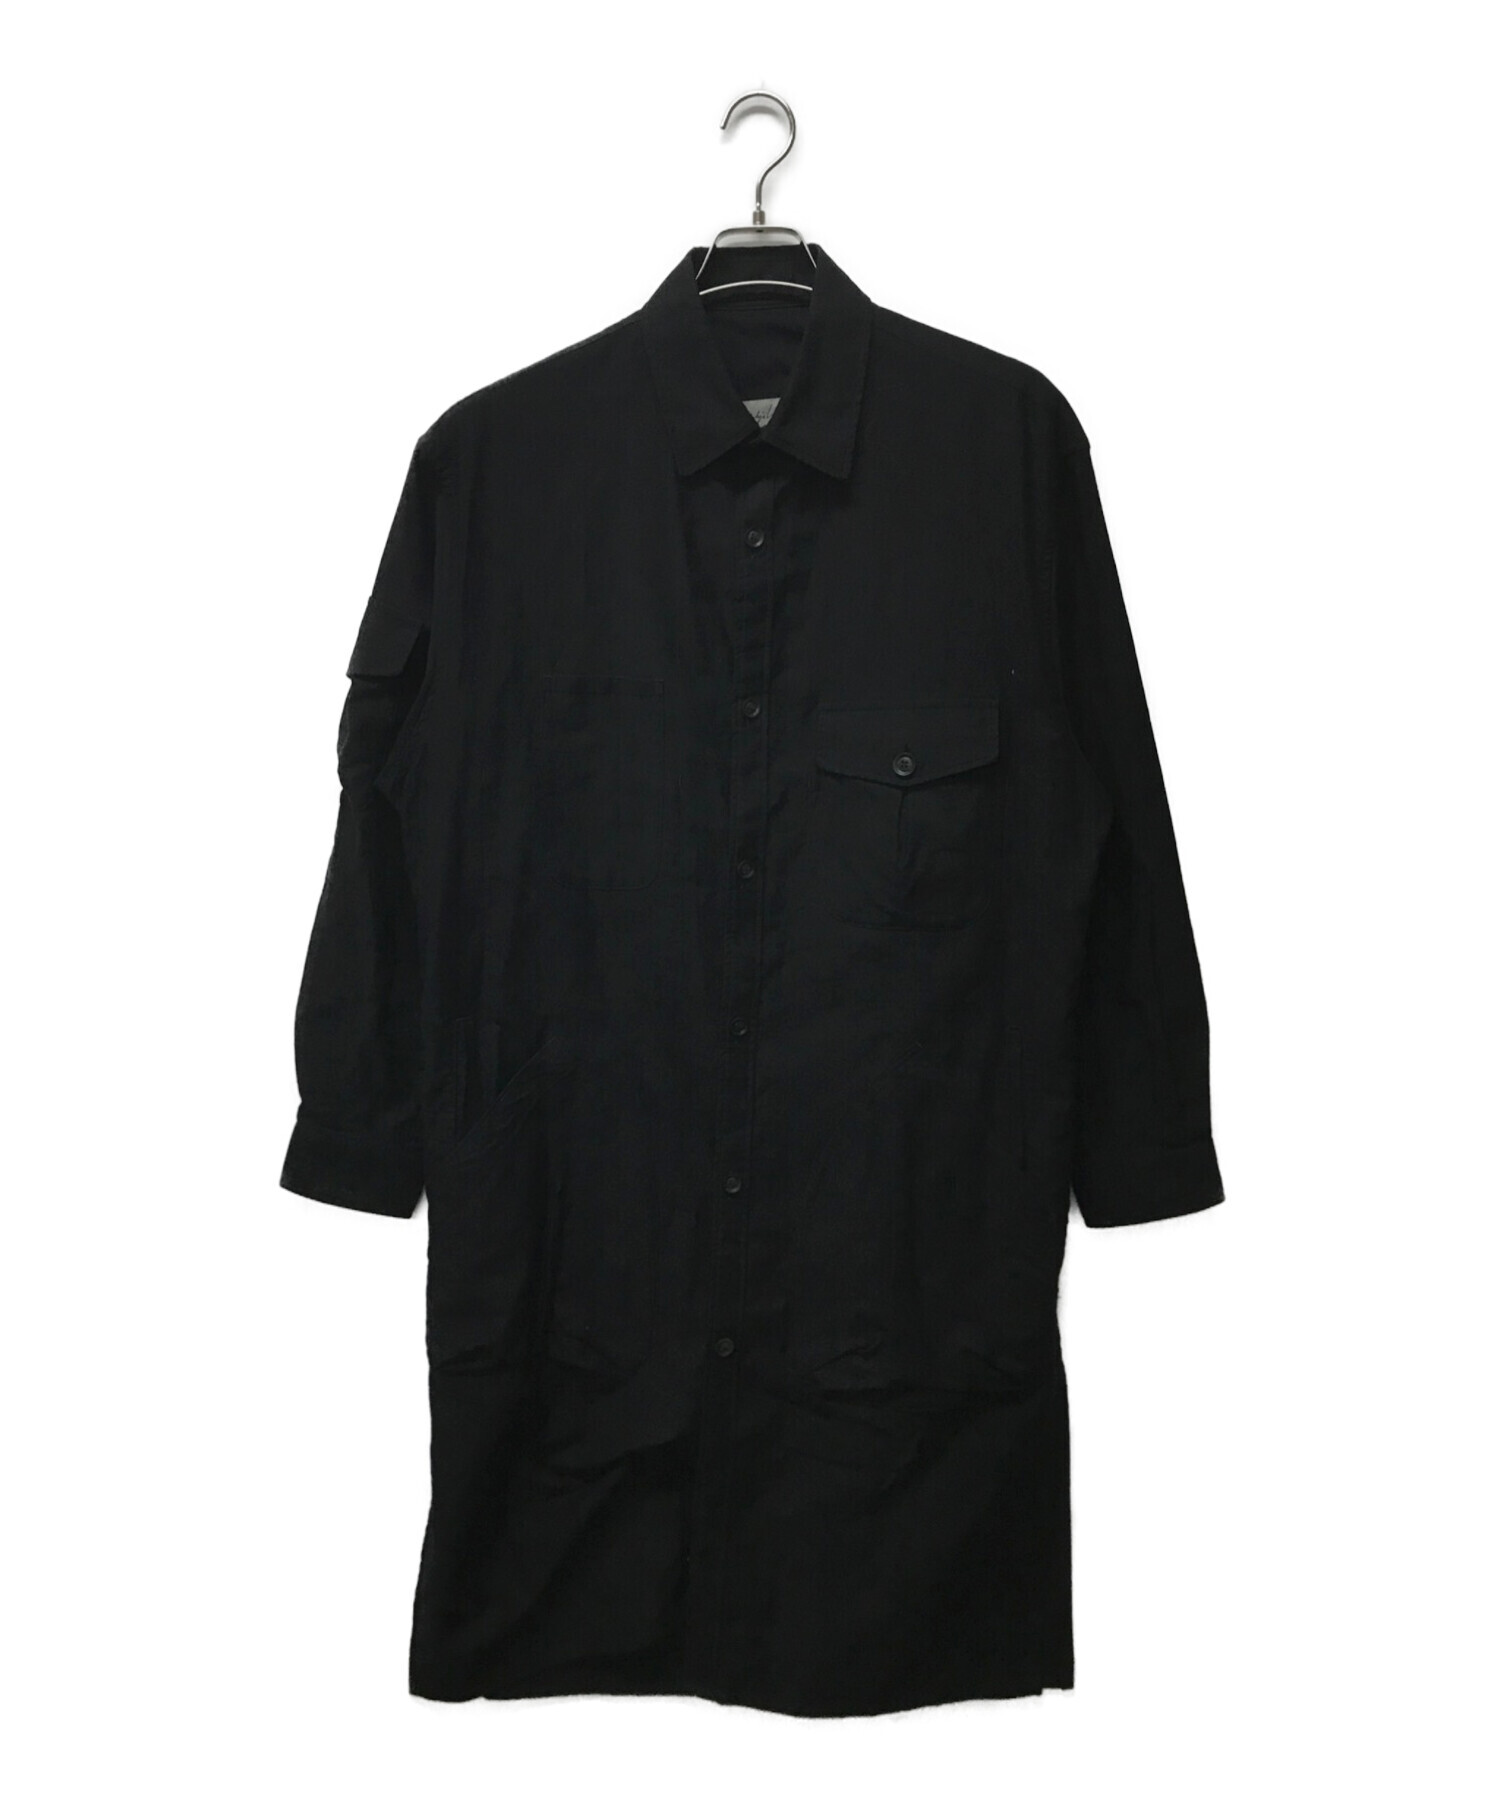 Yohji Yamamoto pour homme (ヨウジヤマモト プールオム) コットンツイルビッグポケットシャツ ブラック サイズ:1